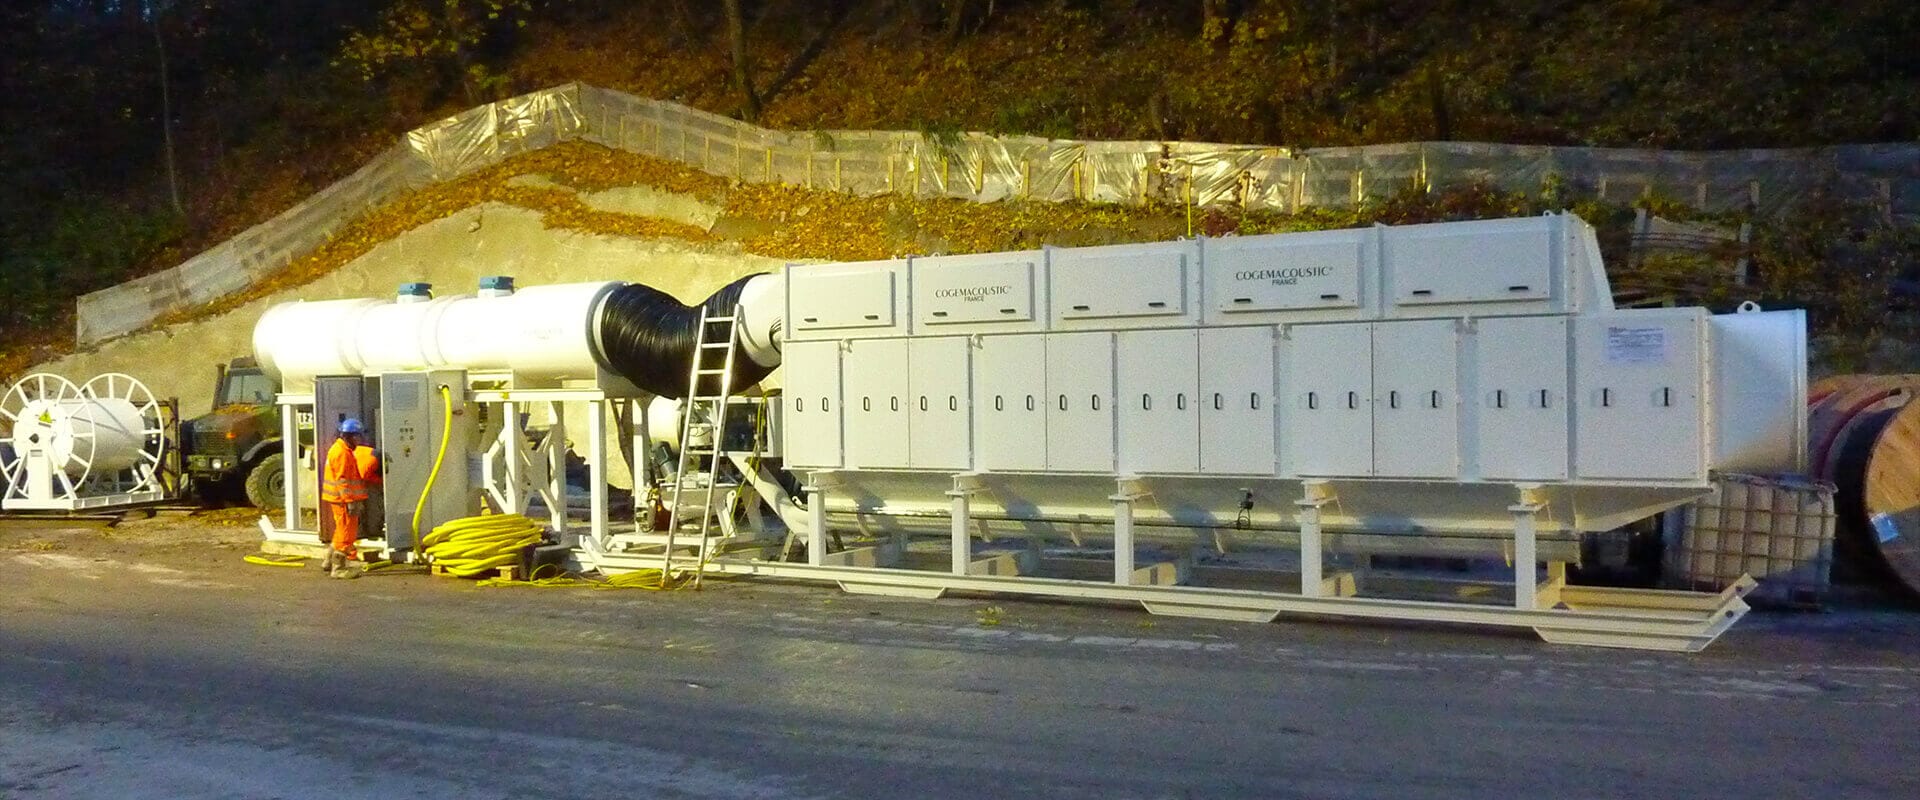 Saverne tunnel (France) système de dépoussiérage ventilation Cogemacoustic